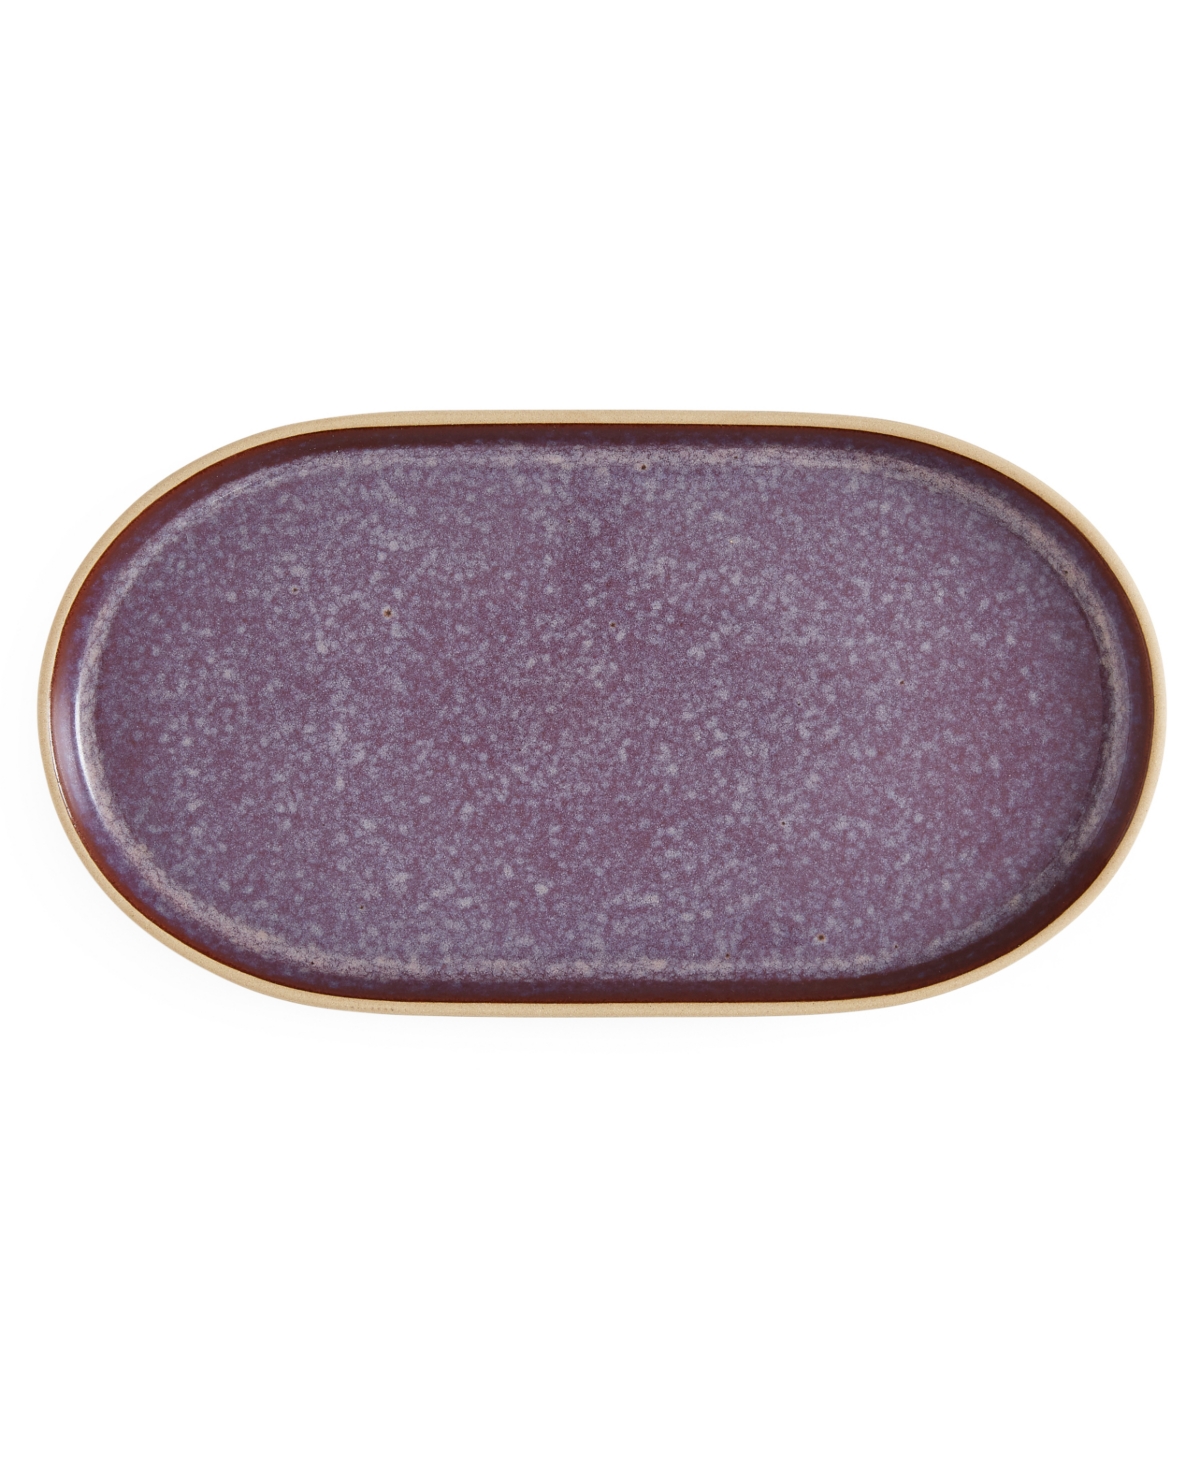 Minerals Medium Oval Platter - Amethyst